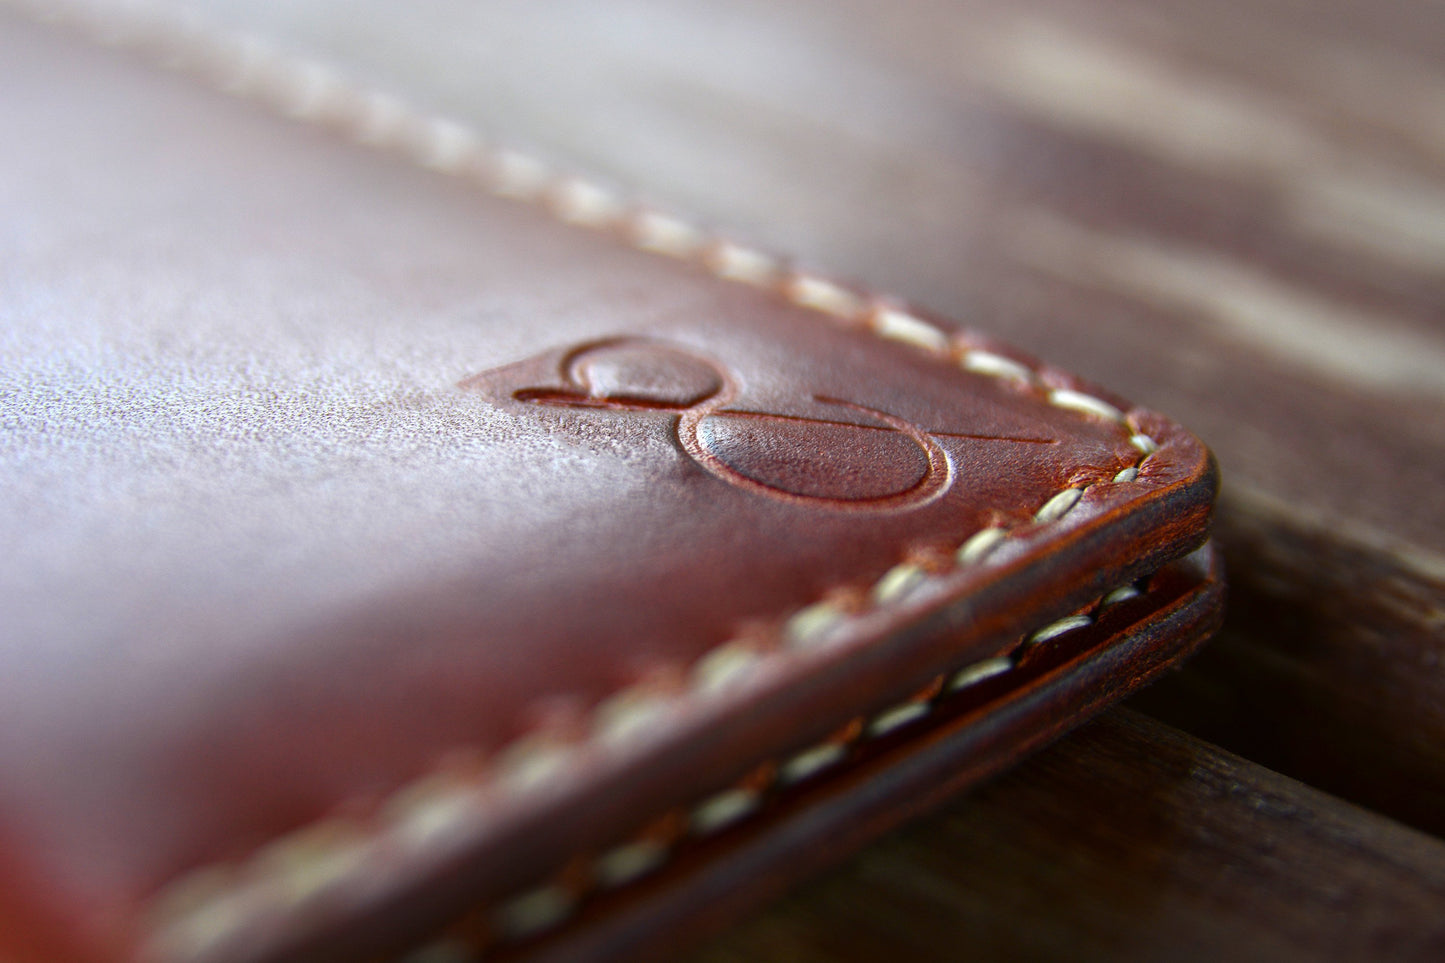 Whiskey Amerikan Pullup Deri Kartlık Cüzdan - Safir Leather